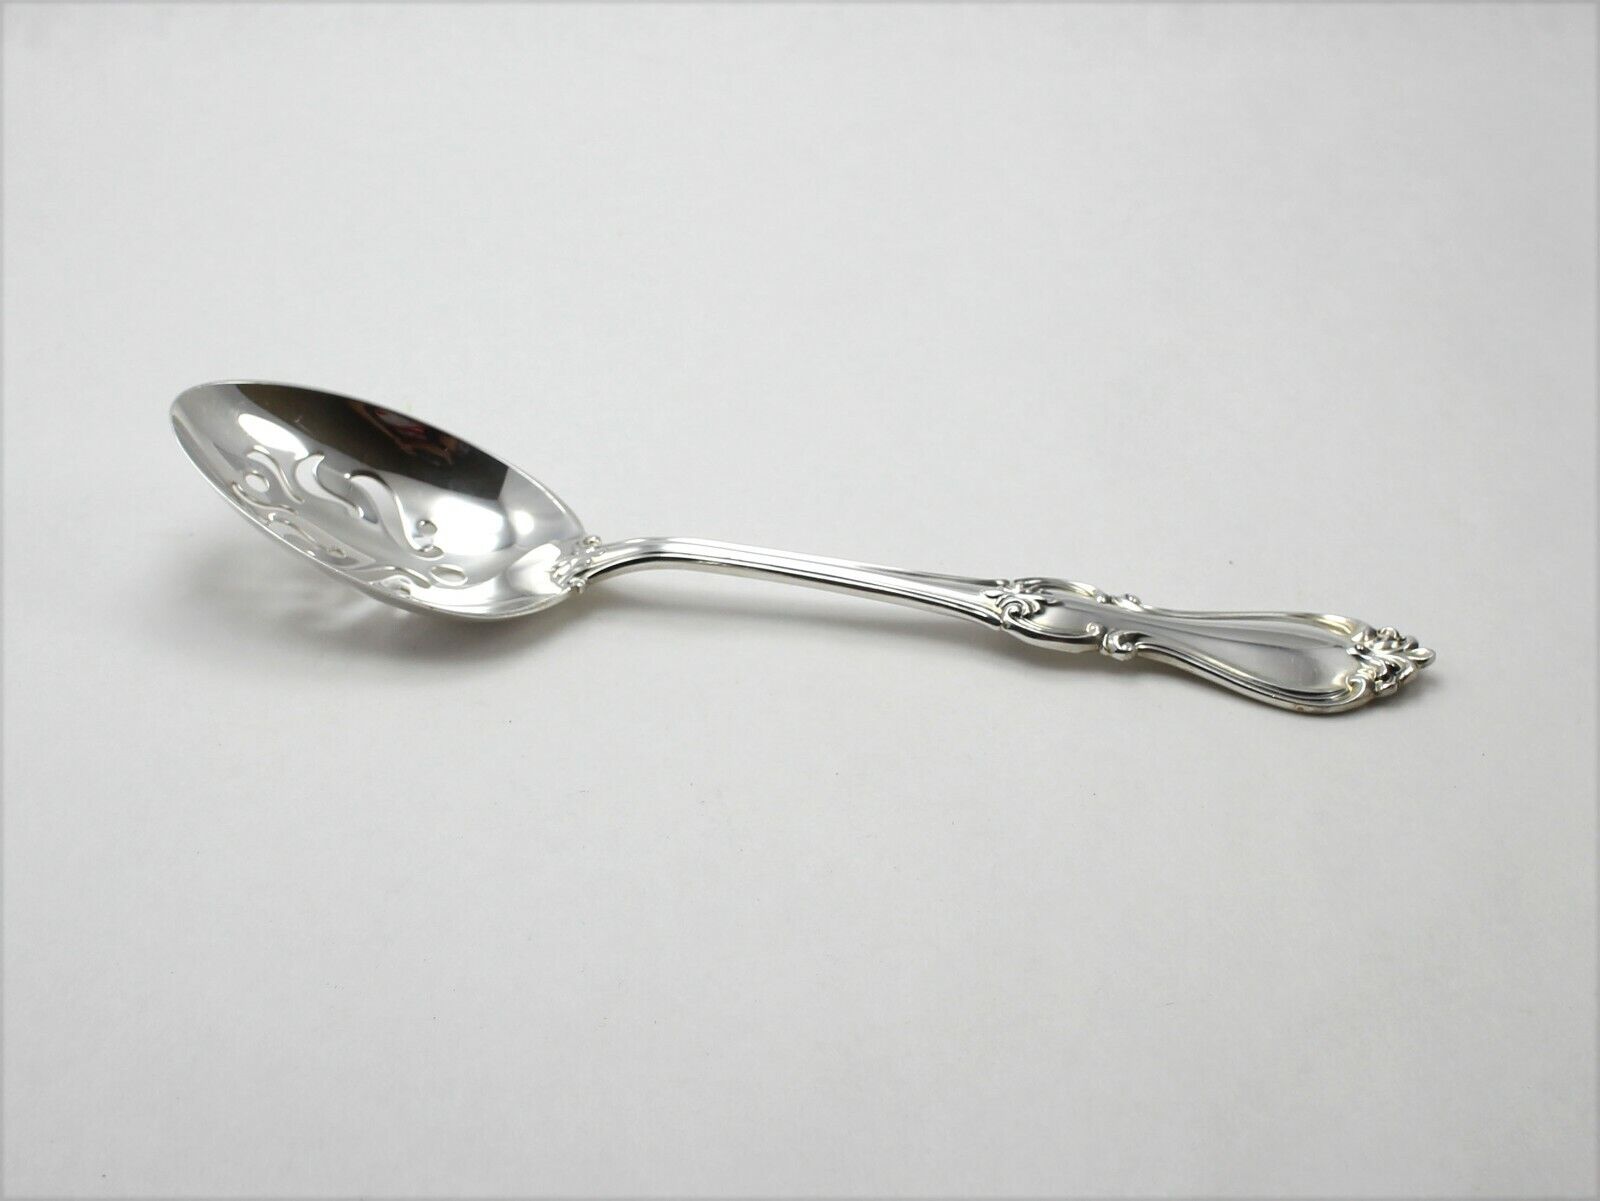 Towle Queen Elizabeth I Sterling Silver Pierced Serving Spoon - 8 5/8" - No Mono